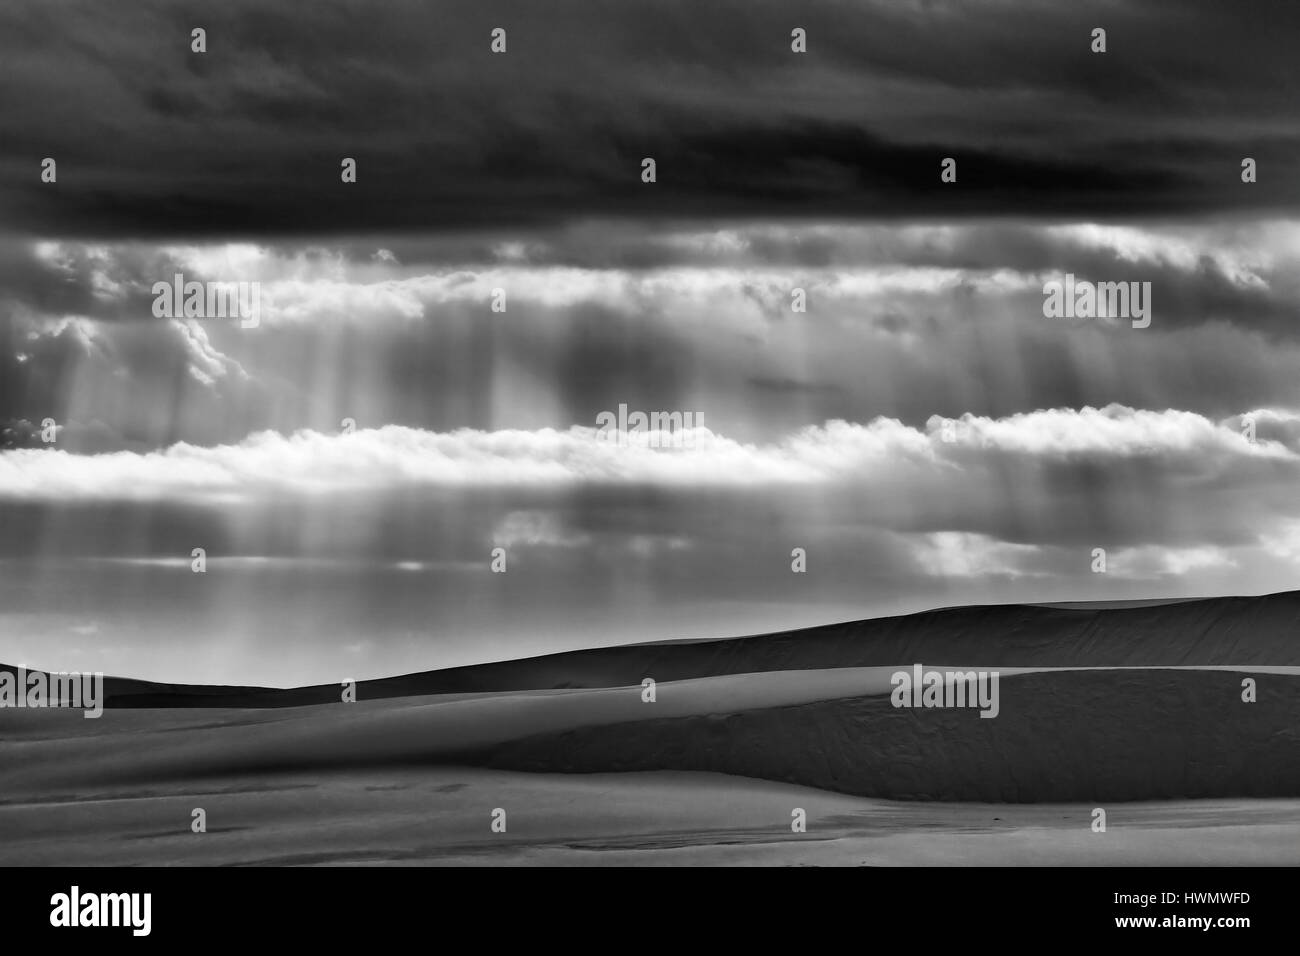 Basse nuvole temporalesche bloccando la luce solare consentendo solo i raggi luminosi a venire attraverso giù a terra - le forme delle dune di sabbia. Foto Stock